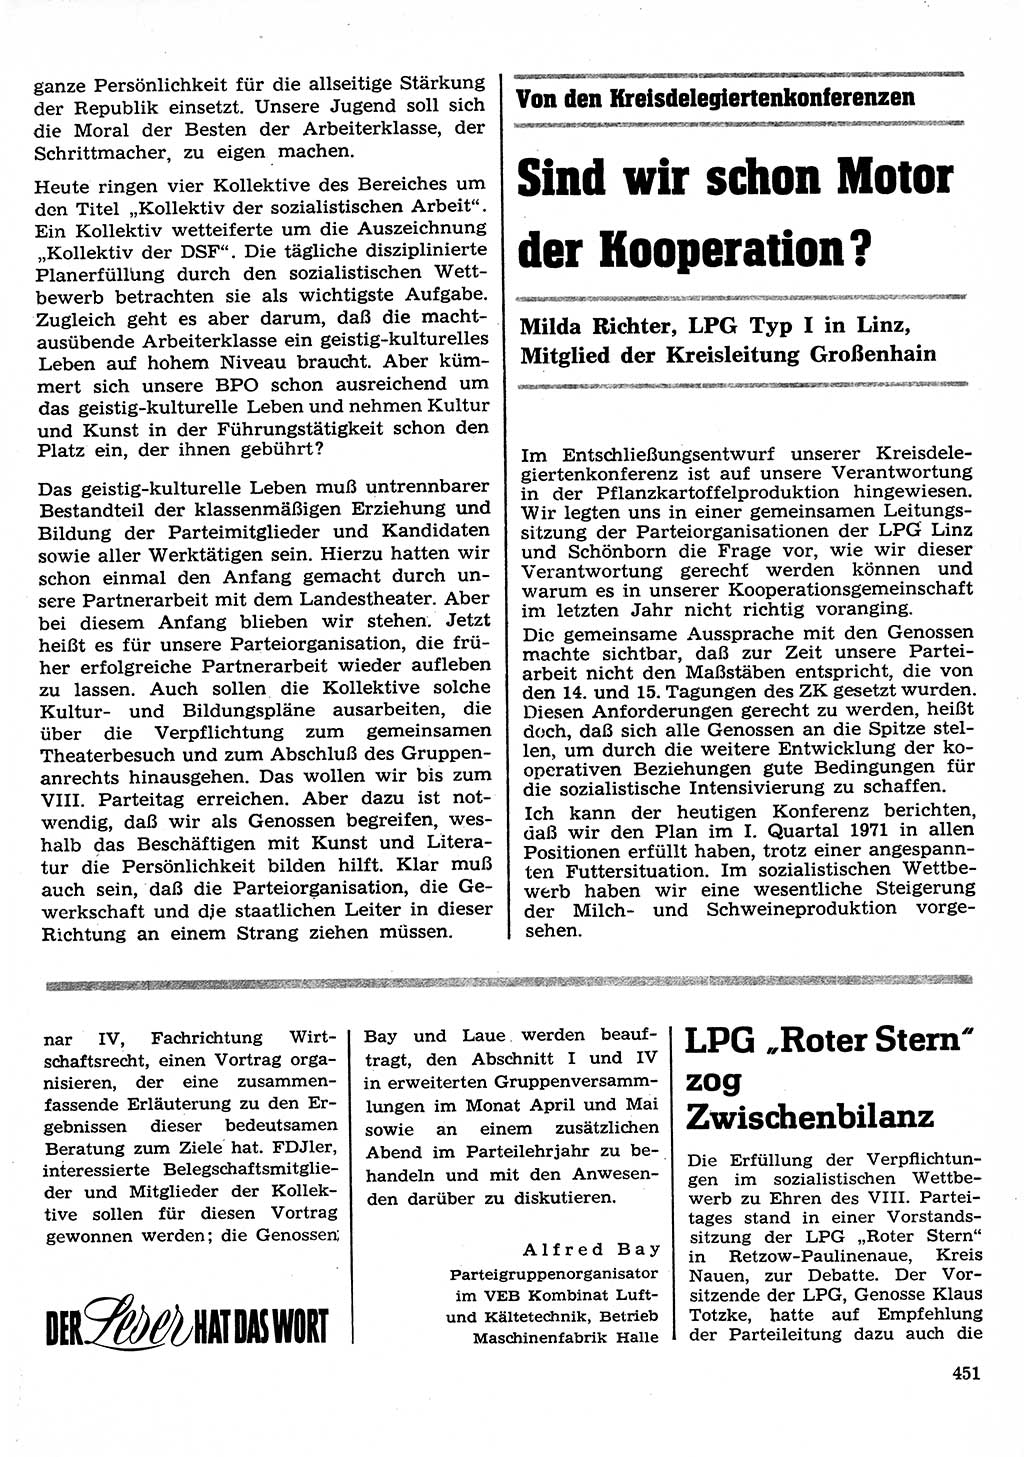 Neuer Weg (NW), Organ des Zentralkomitees (ZK) der SED (Sozialistische Einheitspartei Deutschlands) für Fragen des Parteilebens, 26. Jahrgang [Deutsche Demokratische Republik (DDR)] 1971, Seite 451 (NW ZK SED DDR 1971, S. 451)